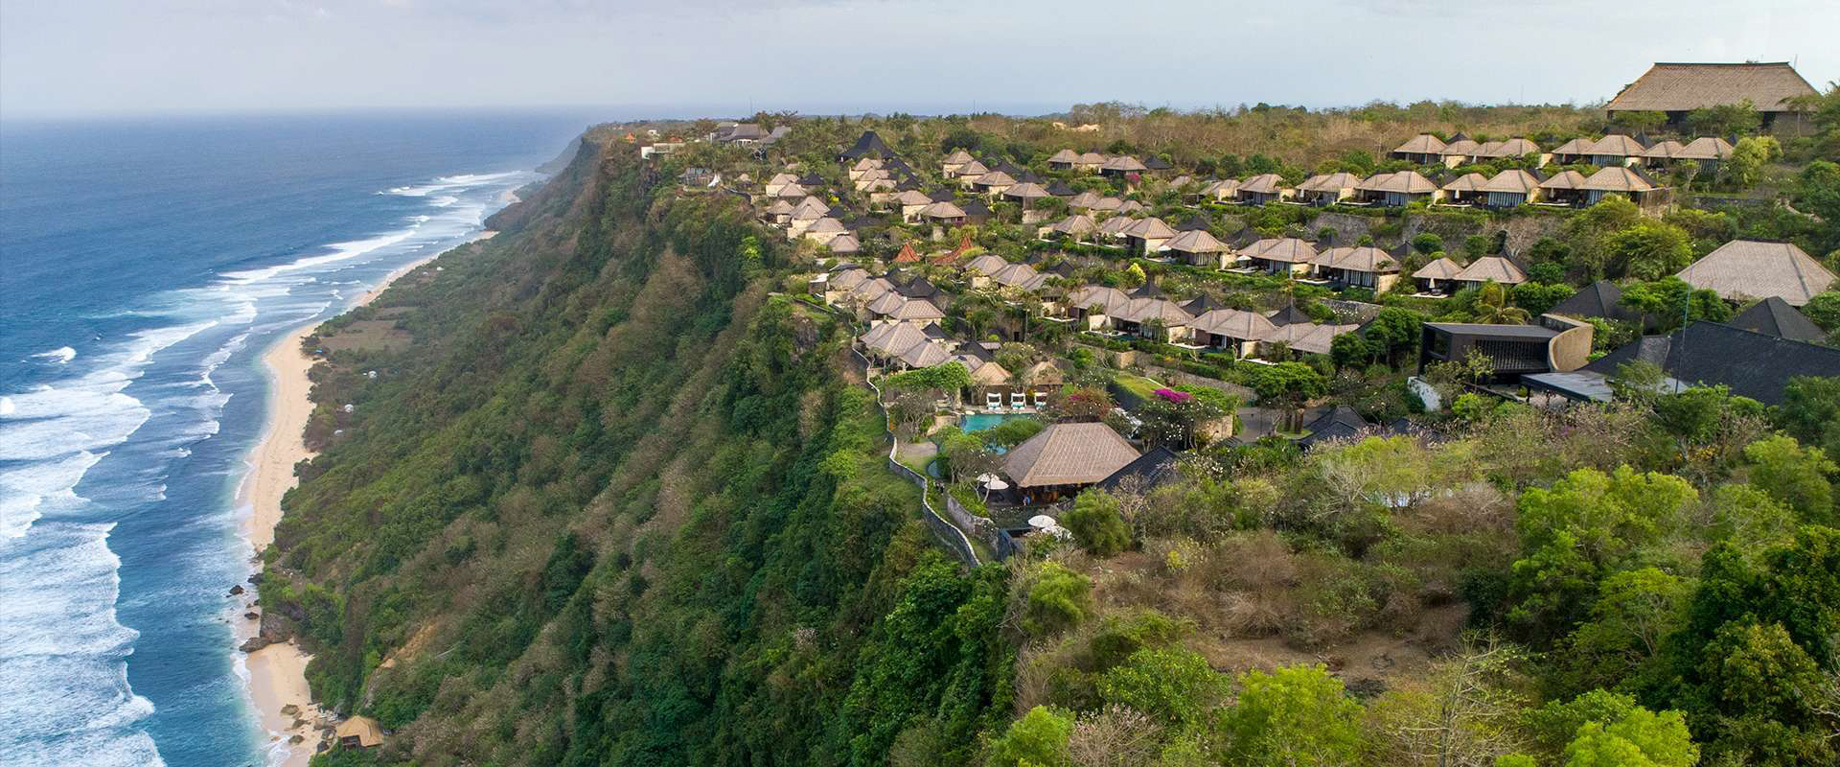 Bvlgari Resort Bali – Uluwatu, Bali, Indonesia – Resort Aerial View